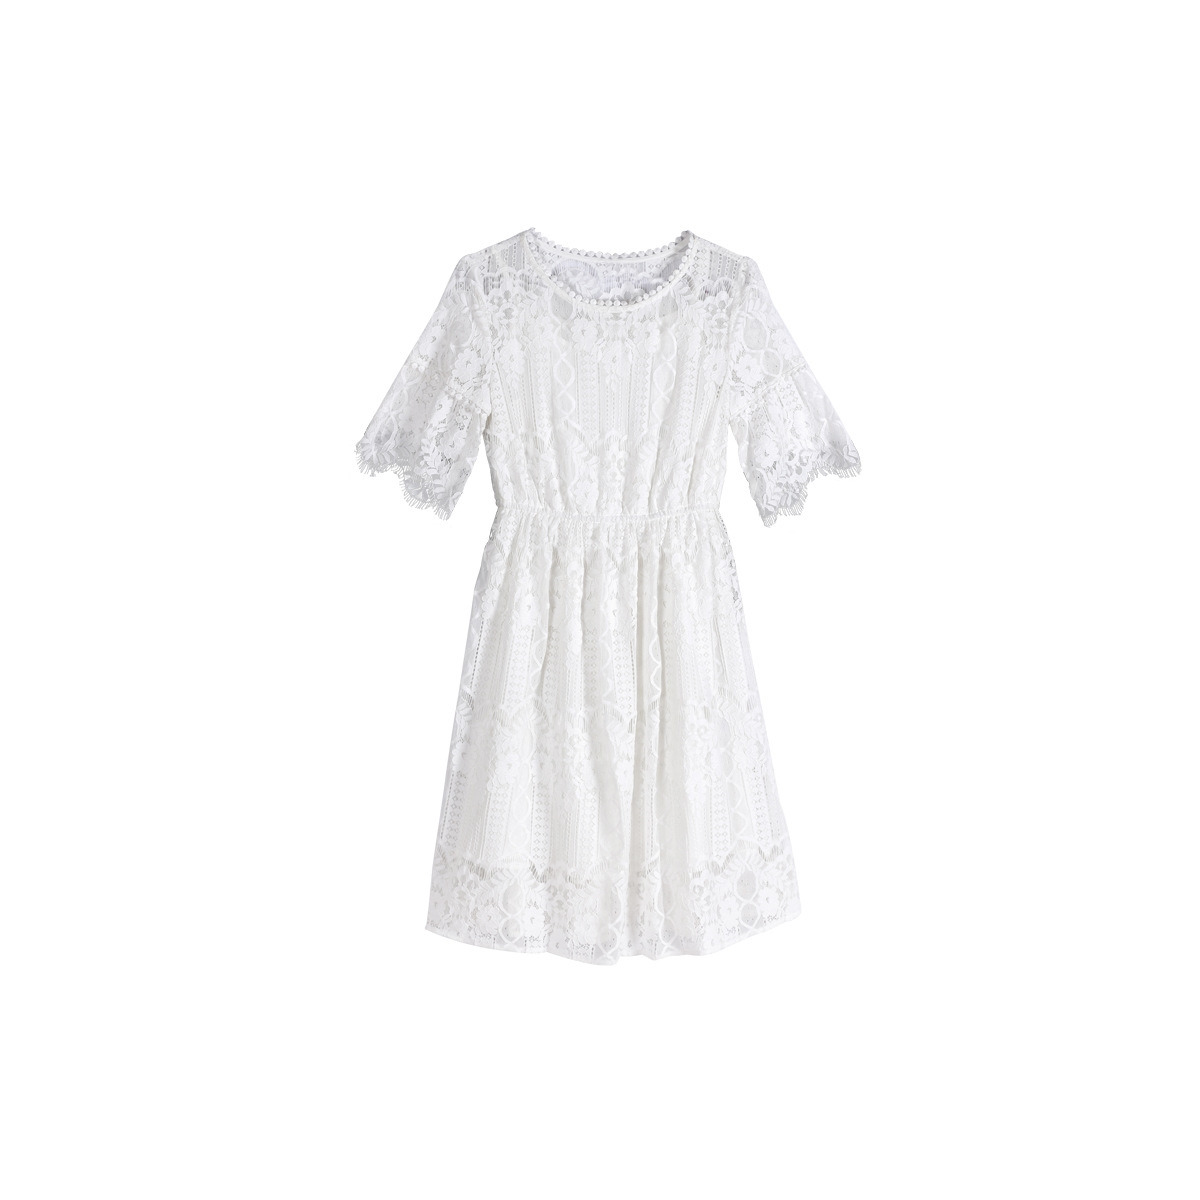 Kleider spitze mit weiße elegante ᐅ Vintage